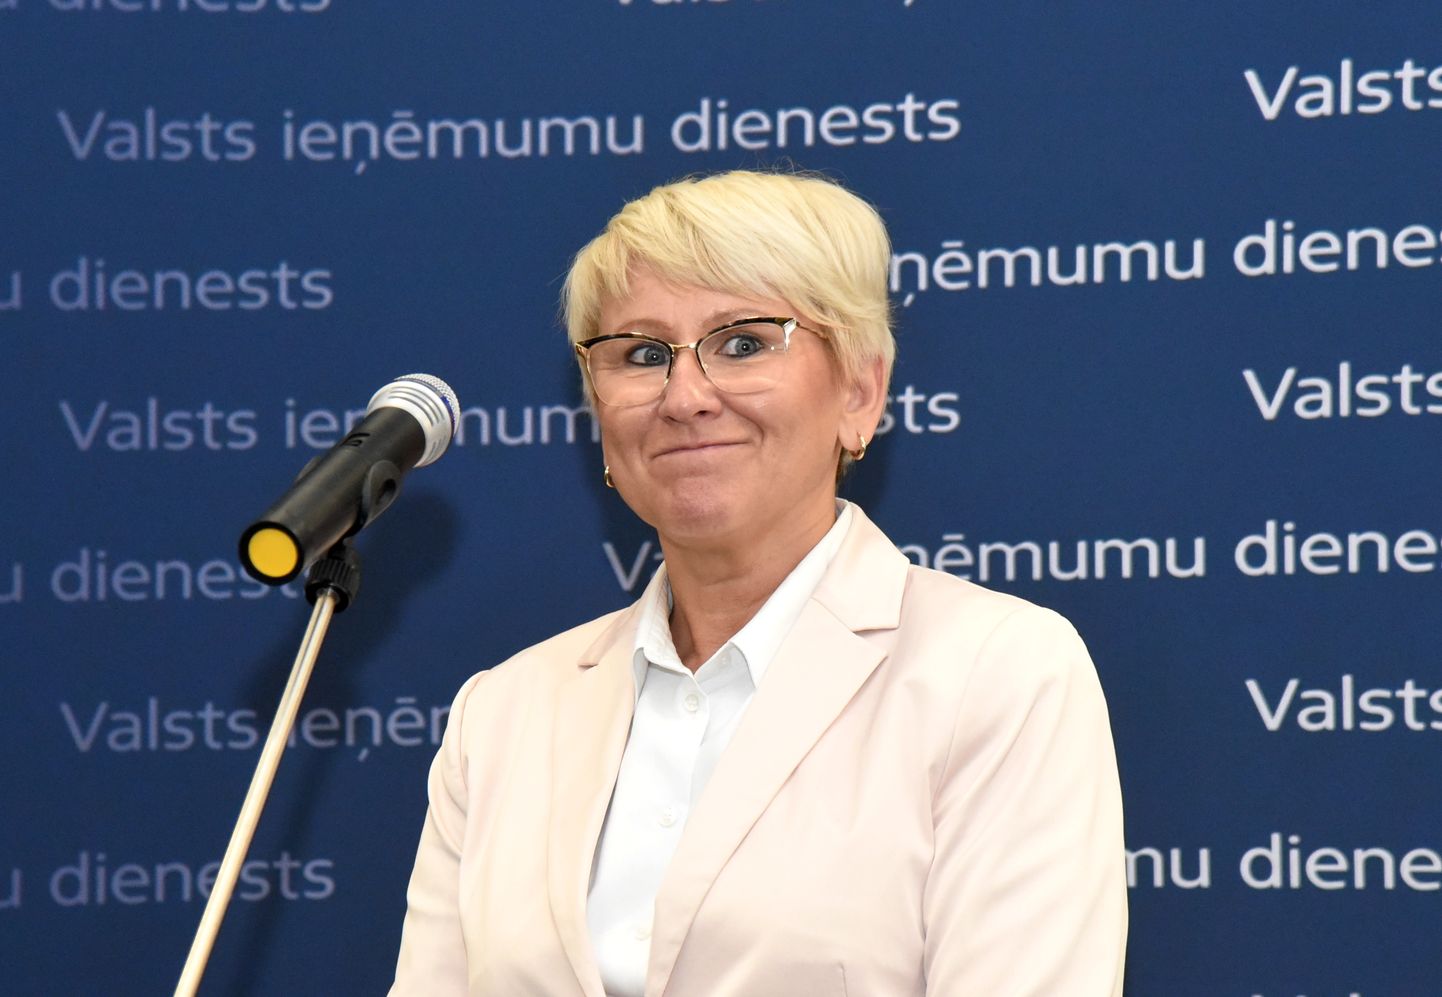 Valsts ieņēmumu dienesta ģenerāldirektore Ieva Jaunzeme